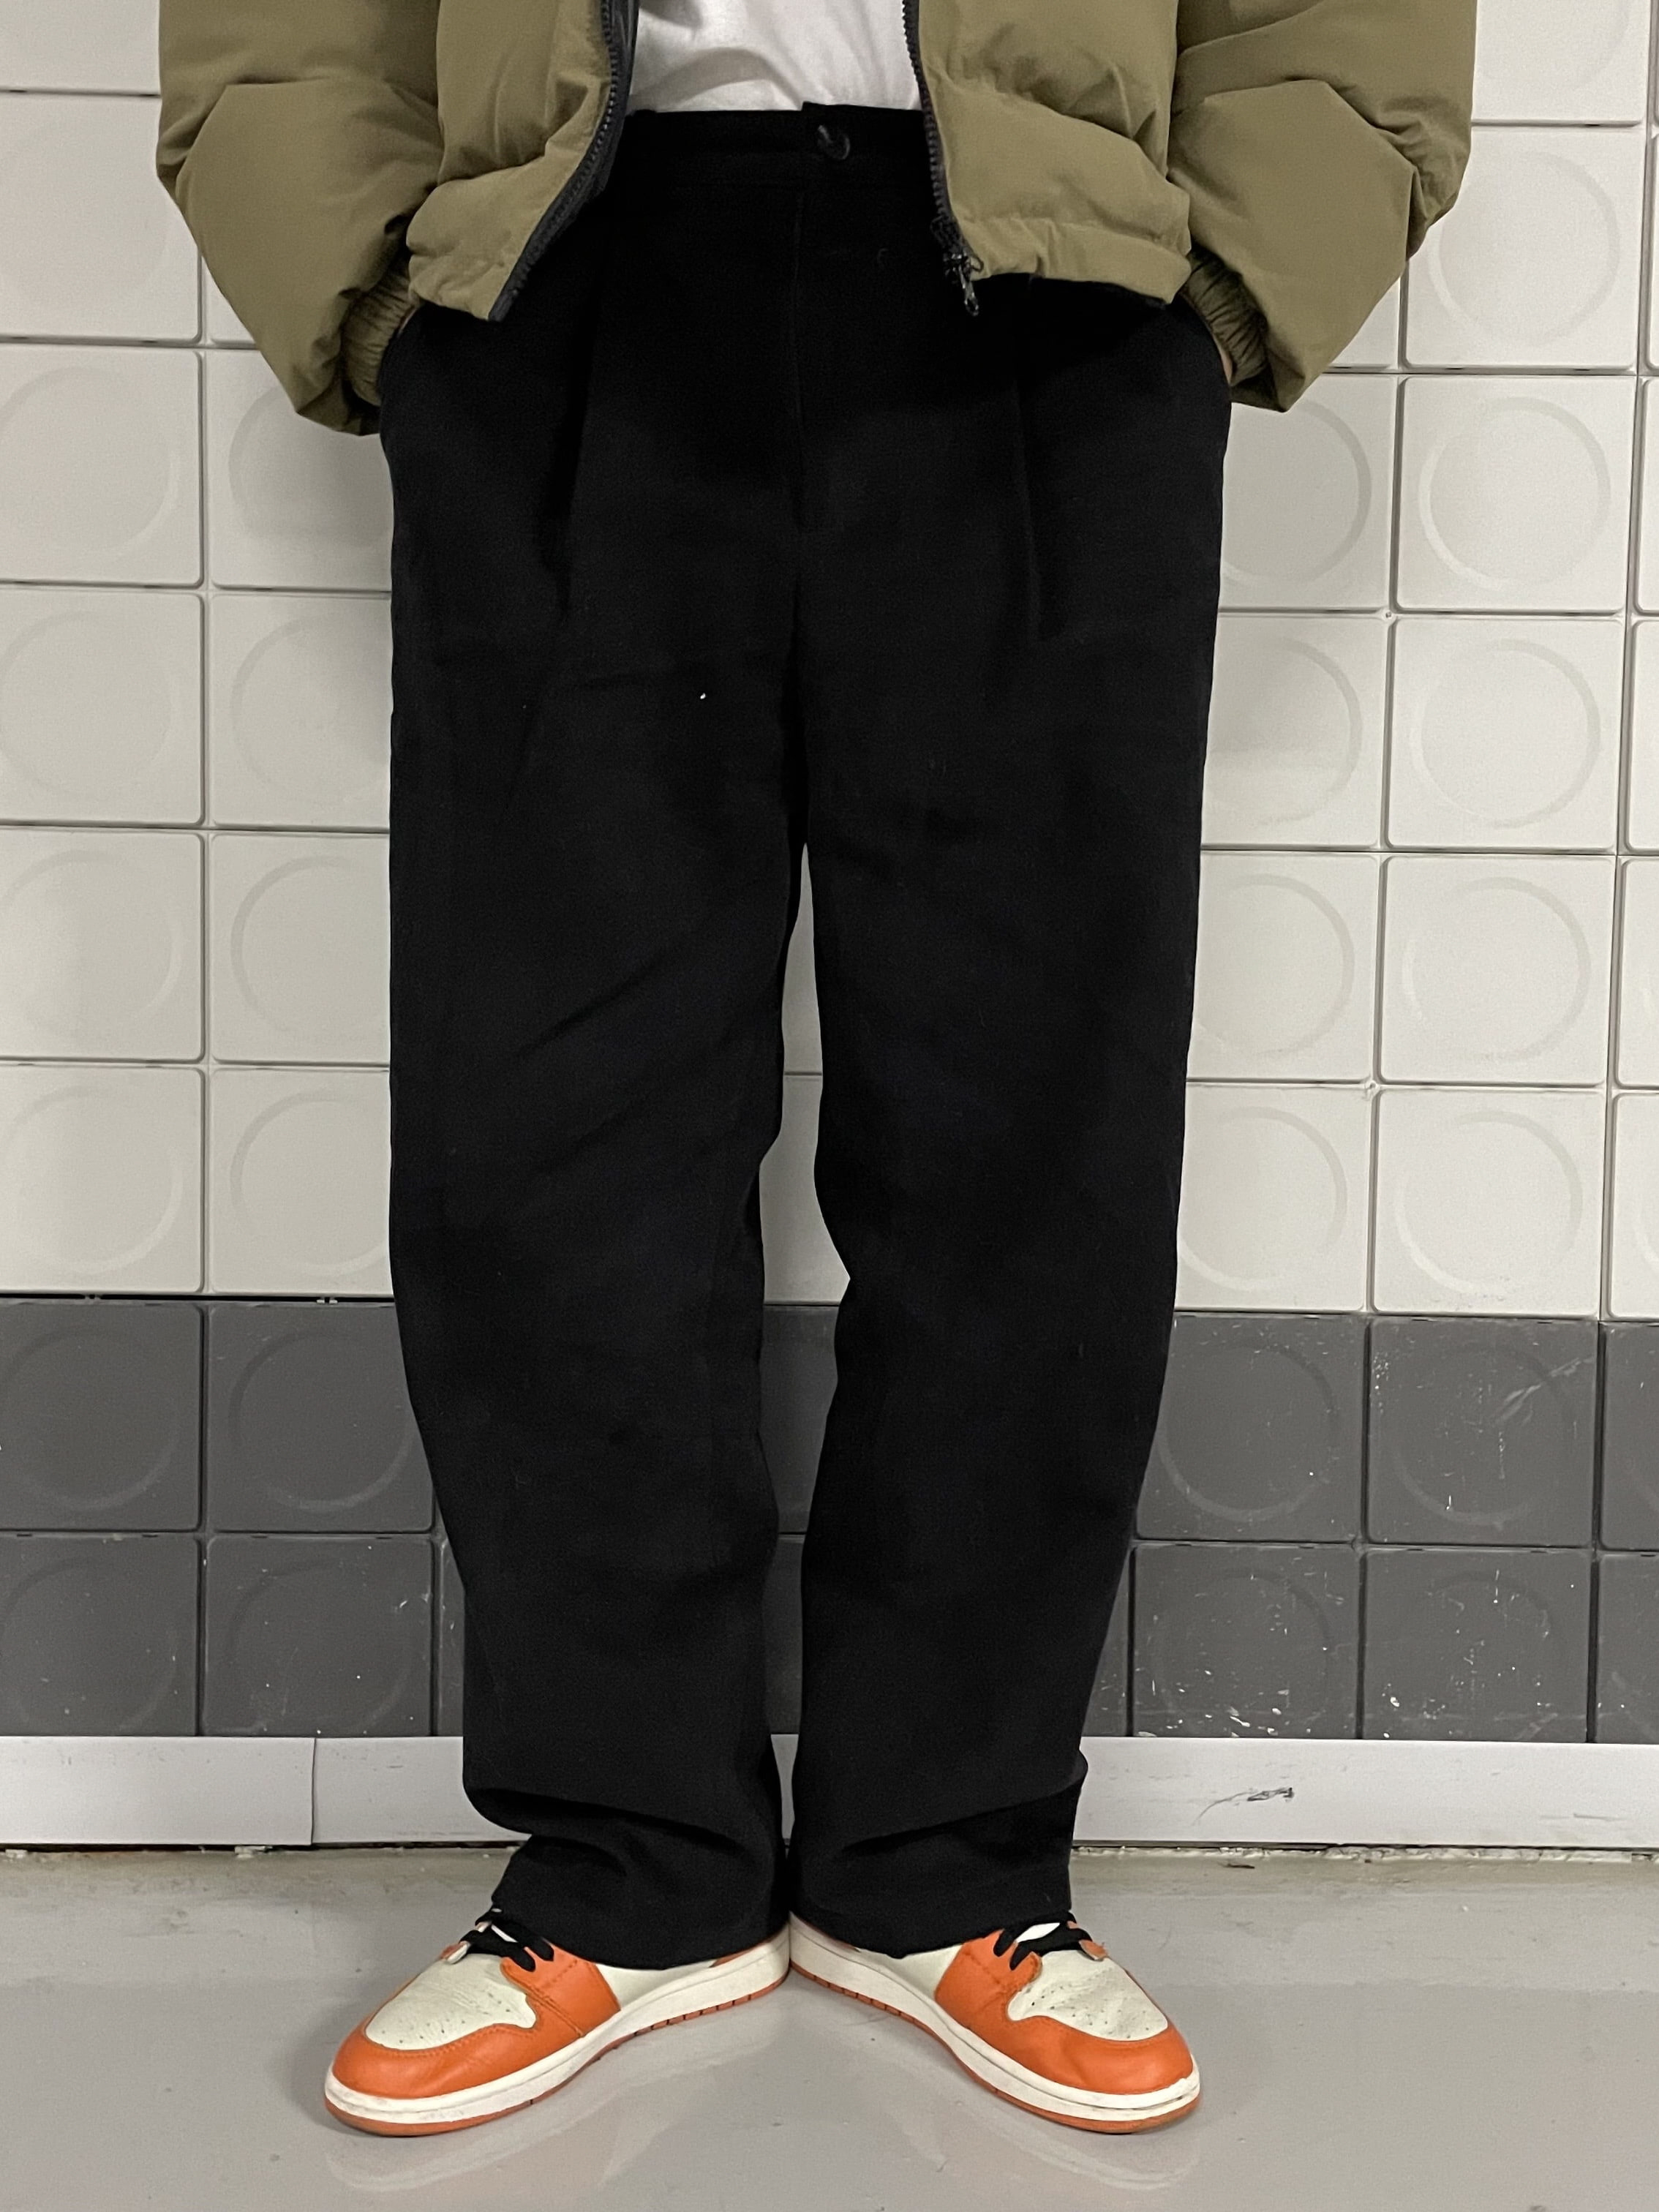 트윌 원턱 와이드 팬츠 (3color)